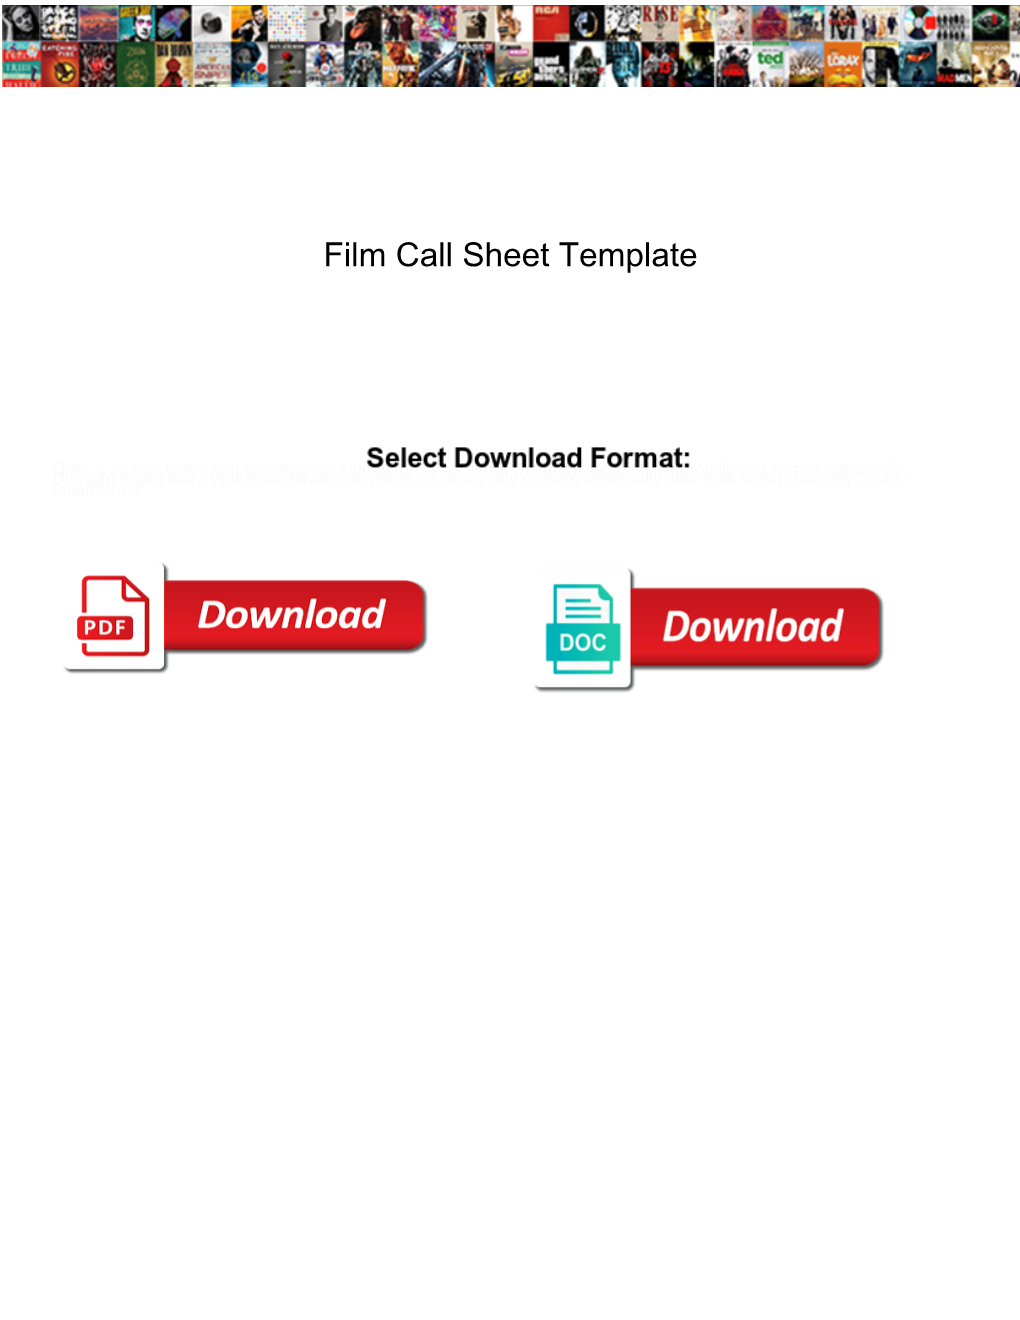 Film Call Sheet Template Yamaha